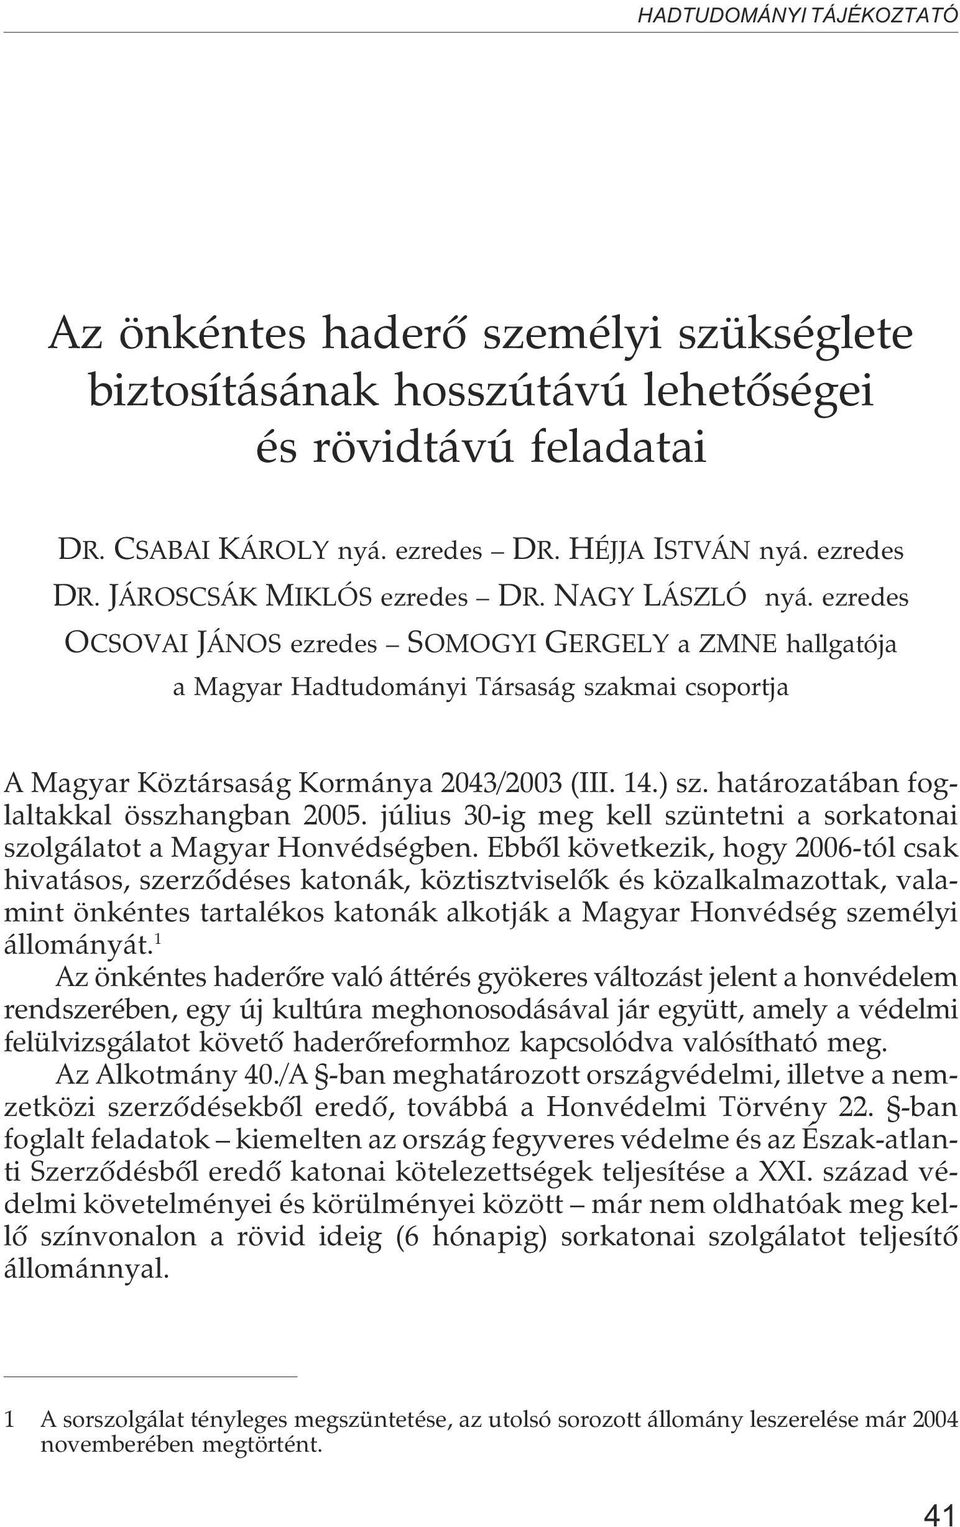 határozatában foglaltakkal összhangban 2005. július 30-ig meg kell szüntetni a sorkatonai szolgálatot a Magyar Honvédségben.